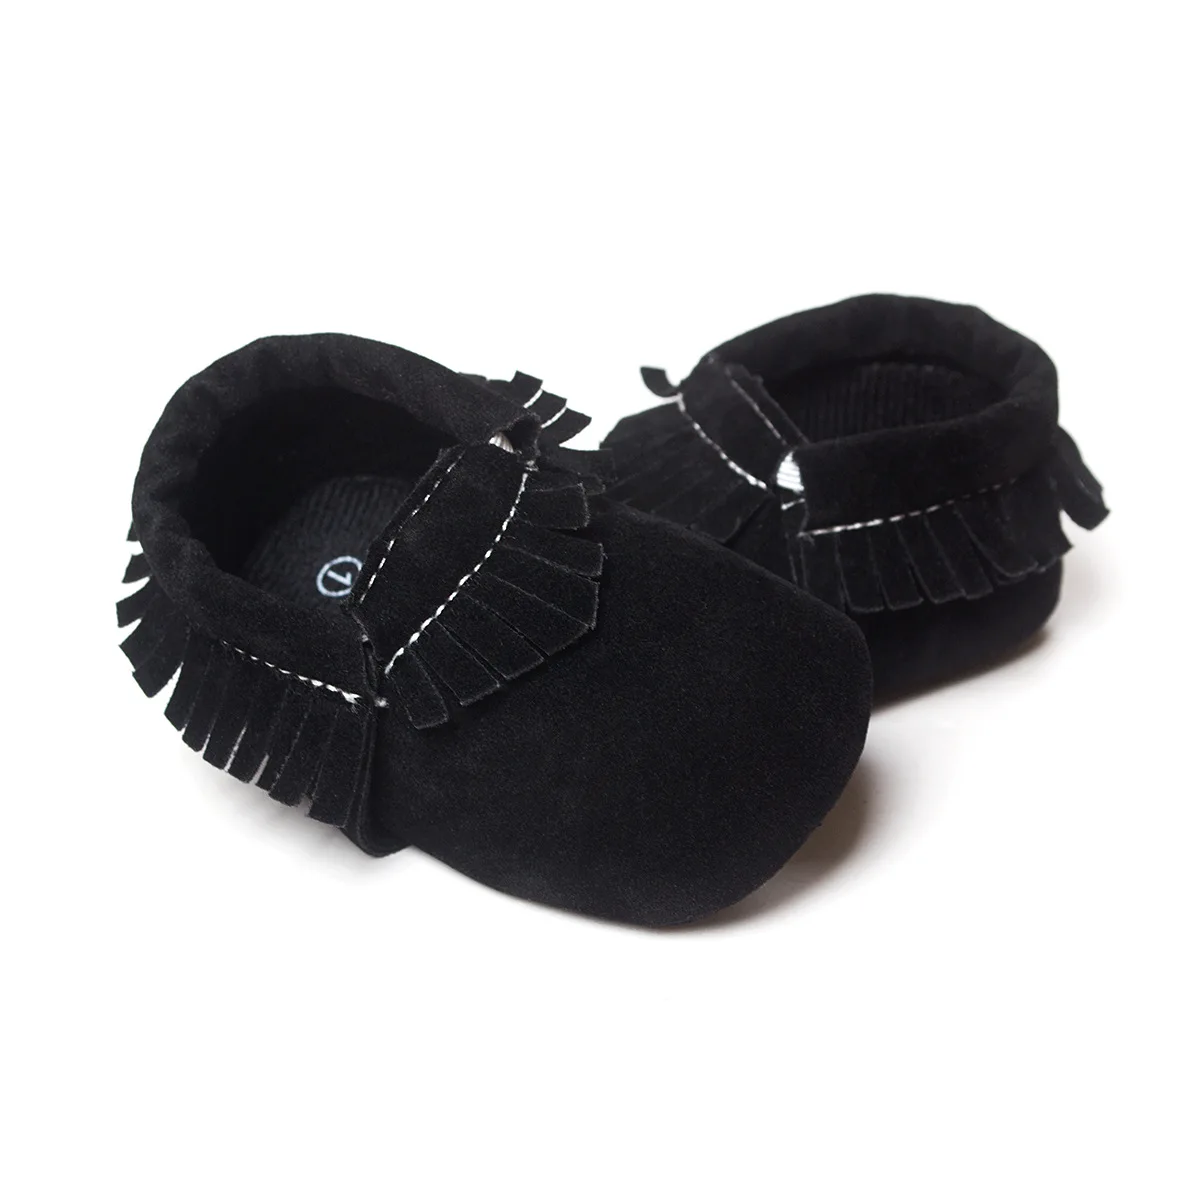 Koovan/детская обувь ребенка; "Принцесса" для деток с года до трех для маленьких мальчиков и девочек Firstwalkers кисточкой функция "анти-потеря" для новорожденных из замшевой кожи